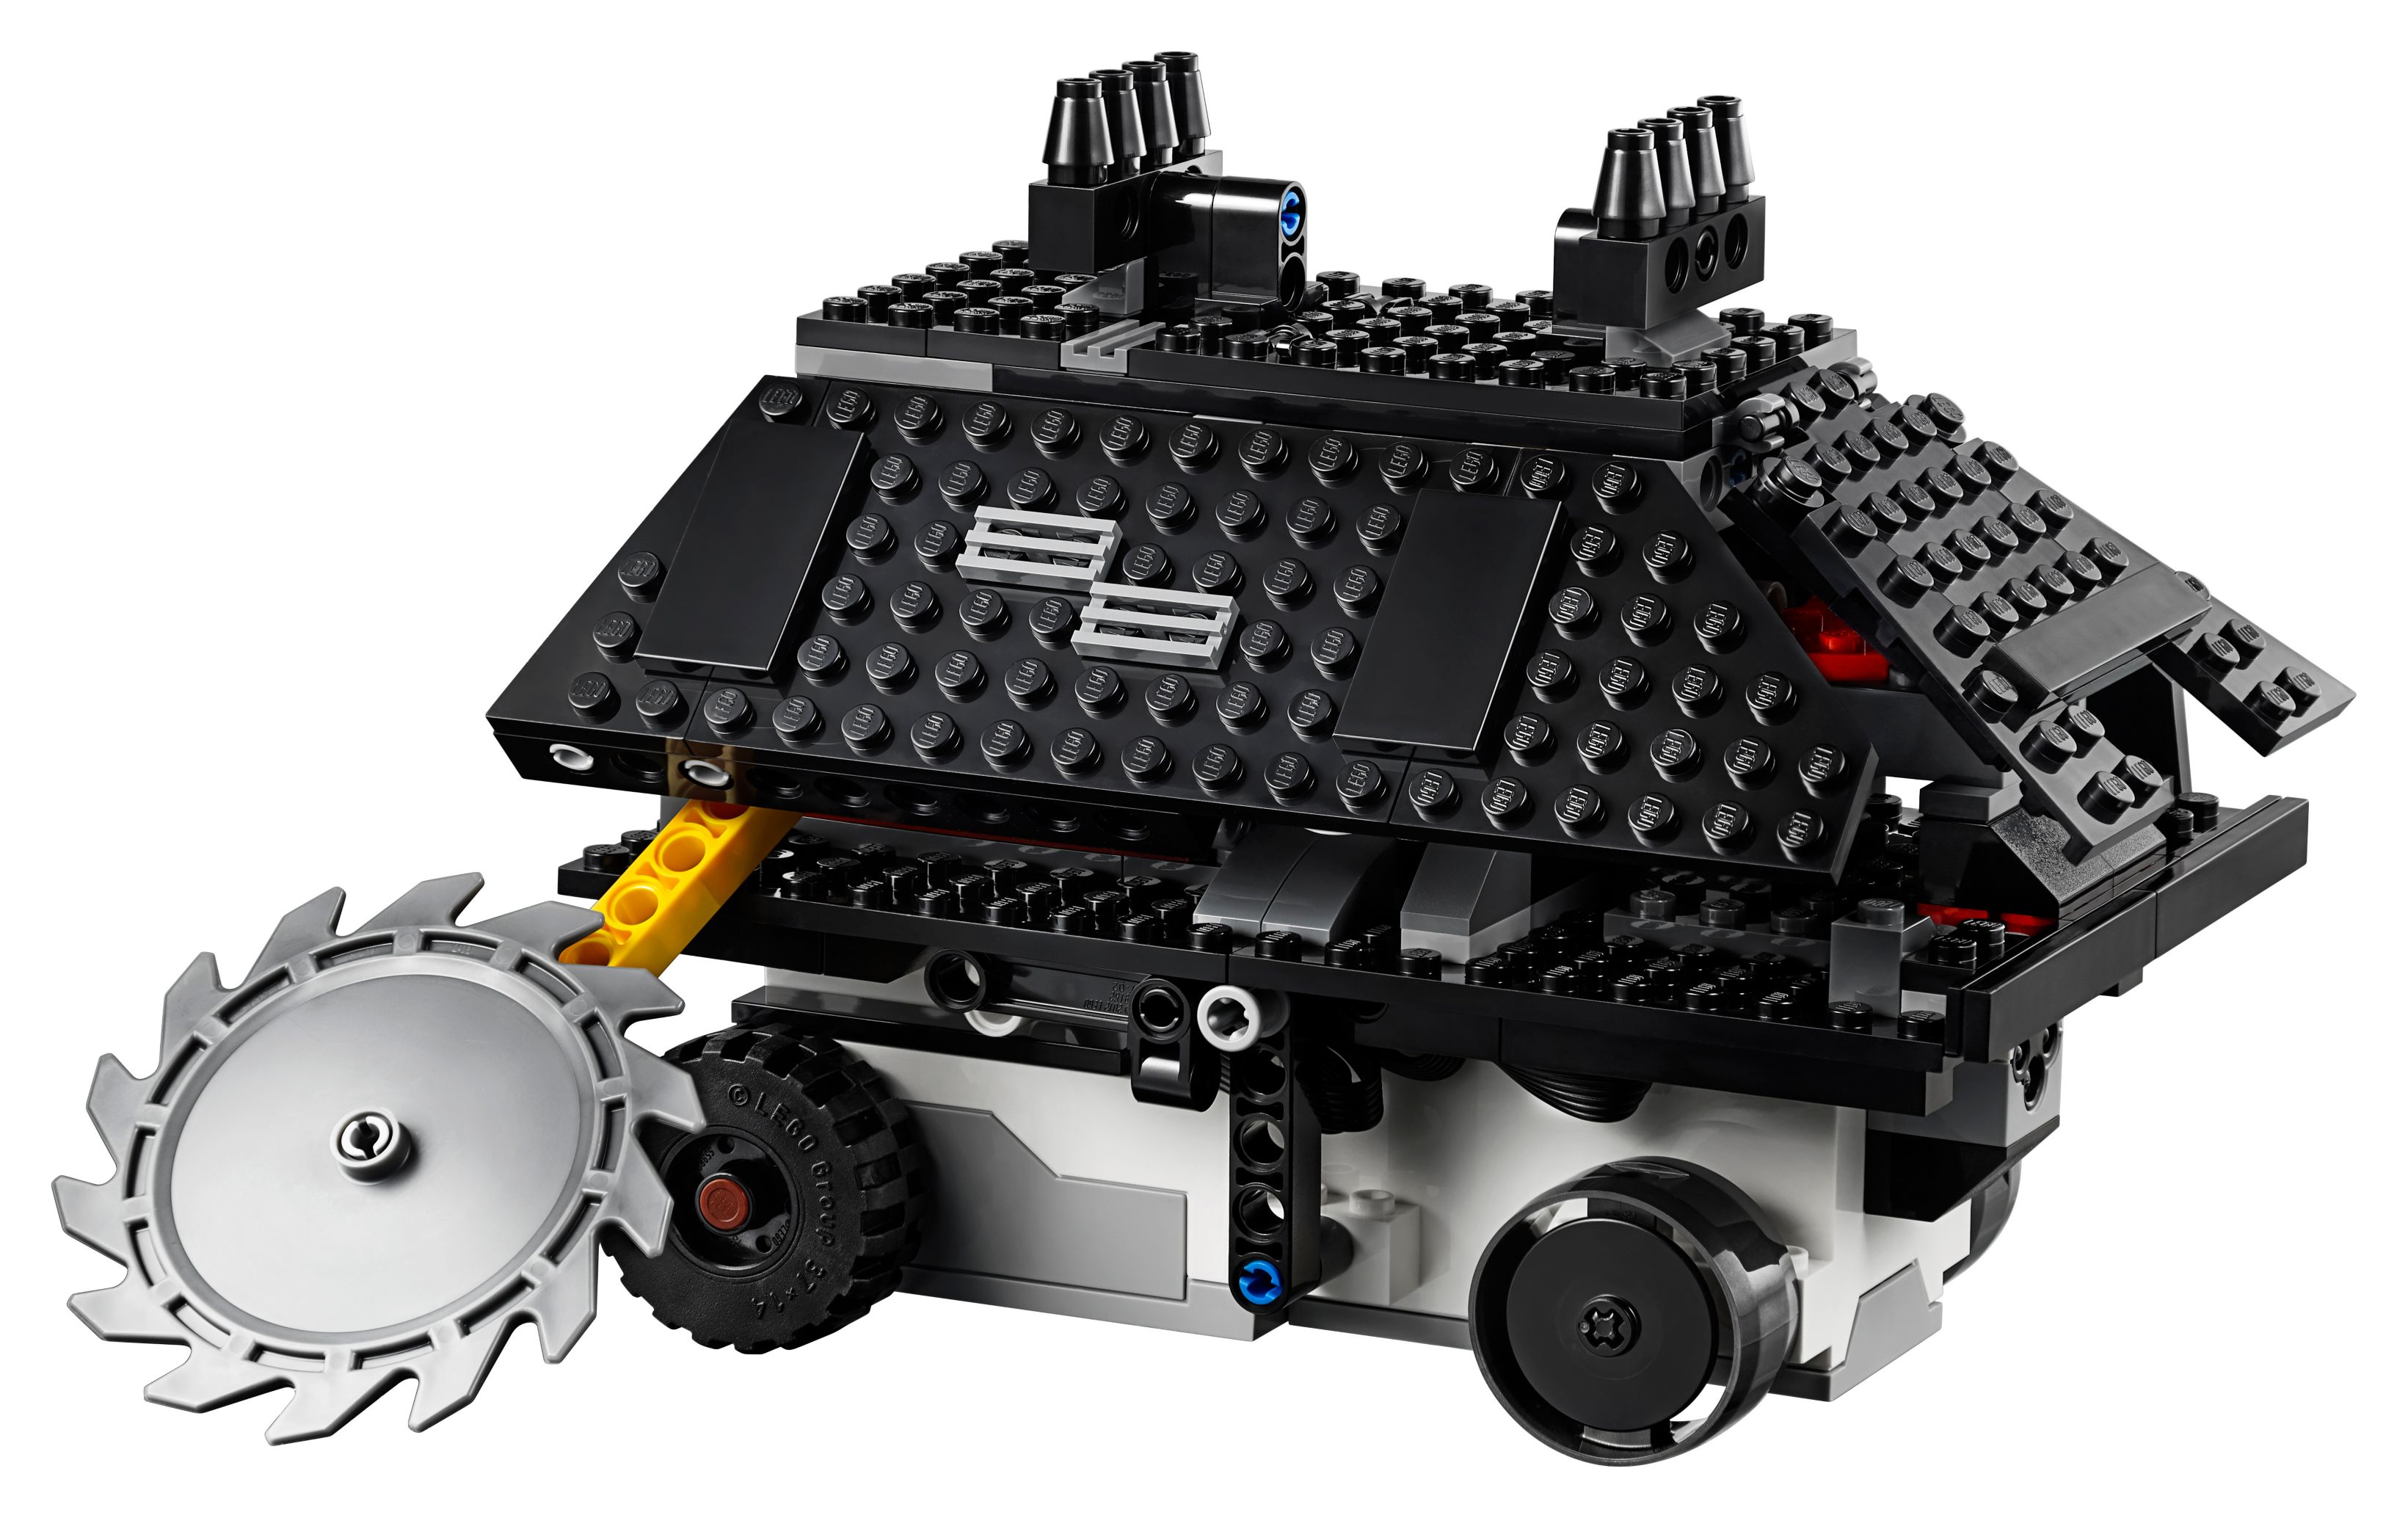 LEGO BOOST 75253 Star Wars™ BOOST Droide LEGO_75253_alt3.jpg